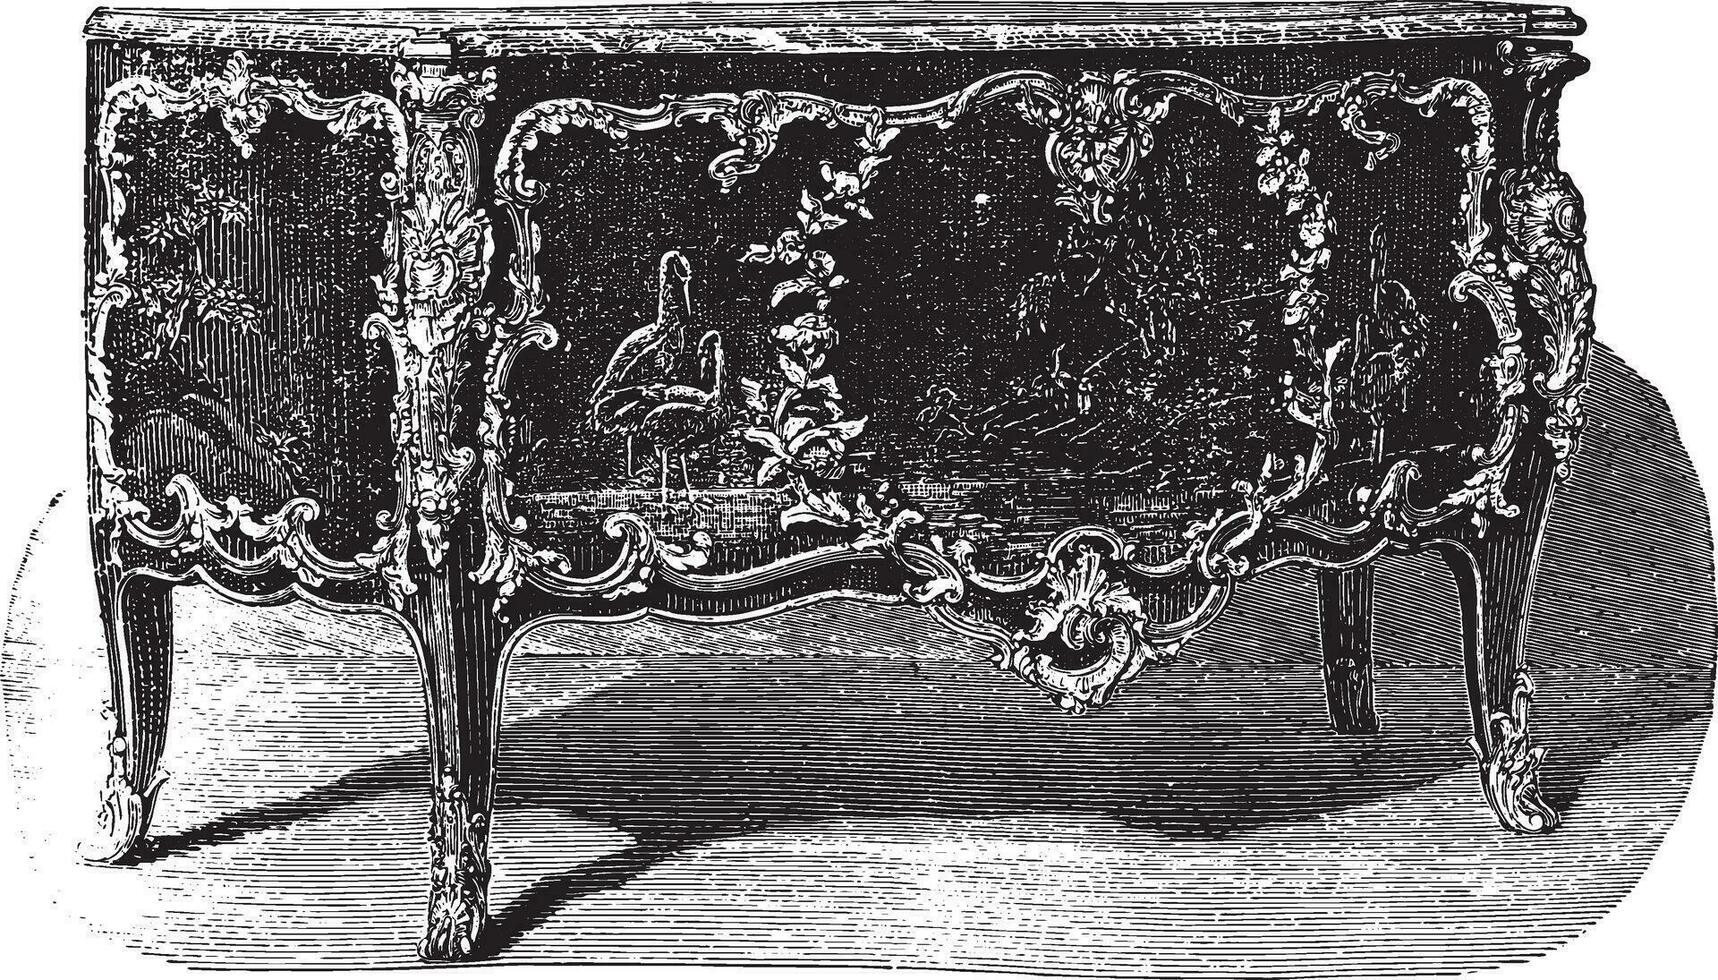 lacado cofre de cajones con bronce adornos atributo a caffieri decimoctavo siglo, Clásico grabado. vector